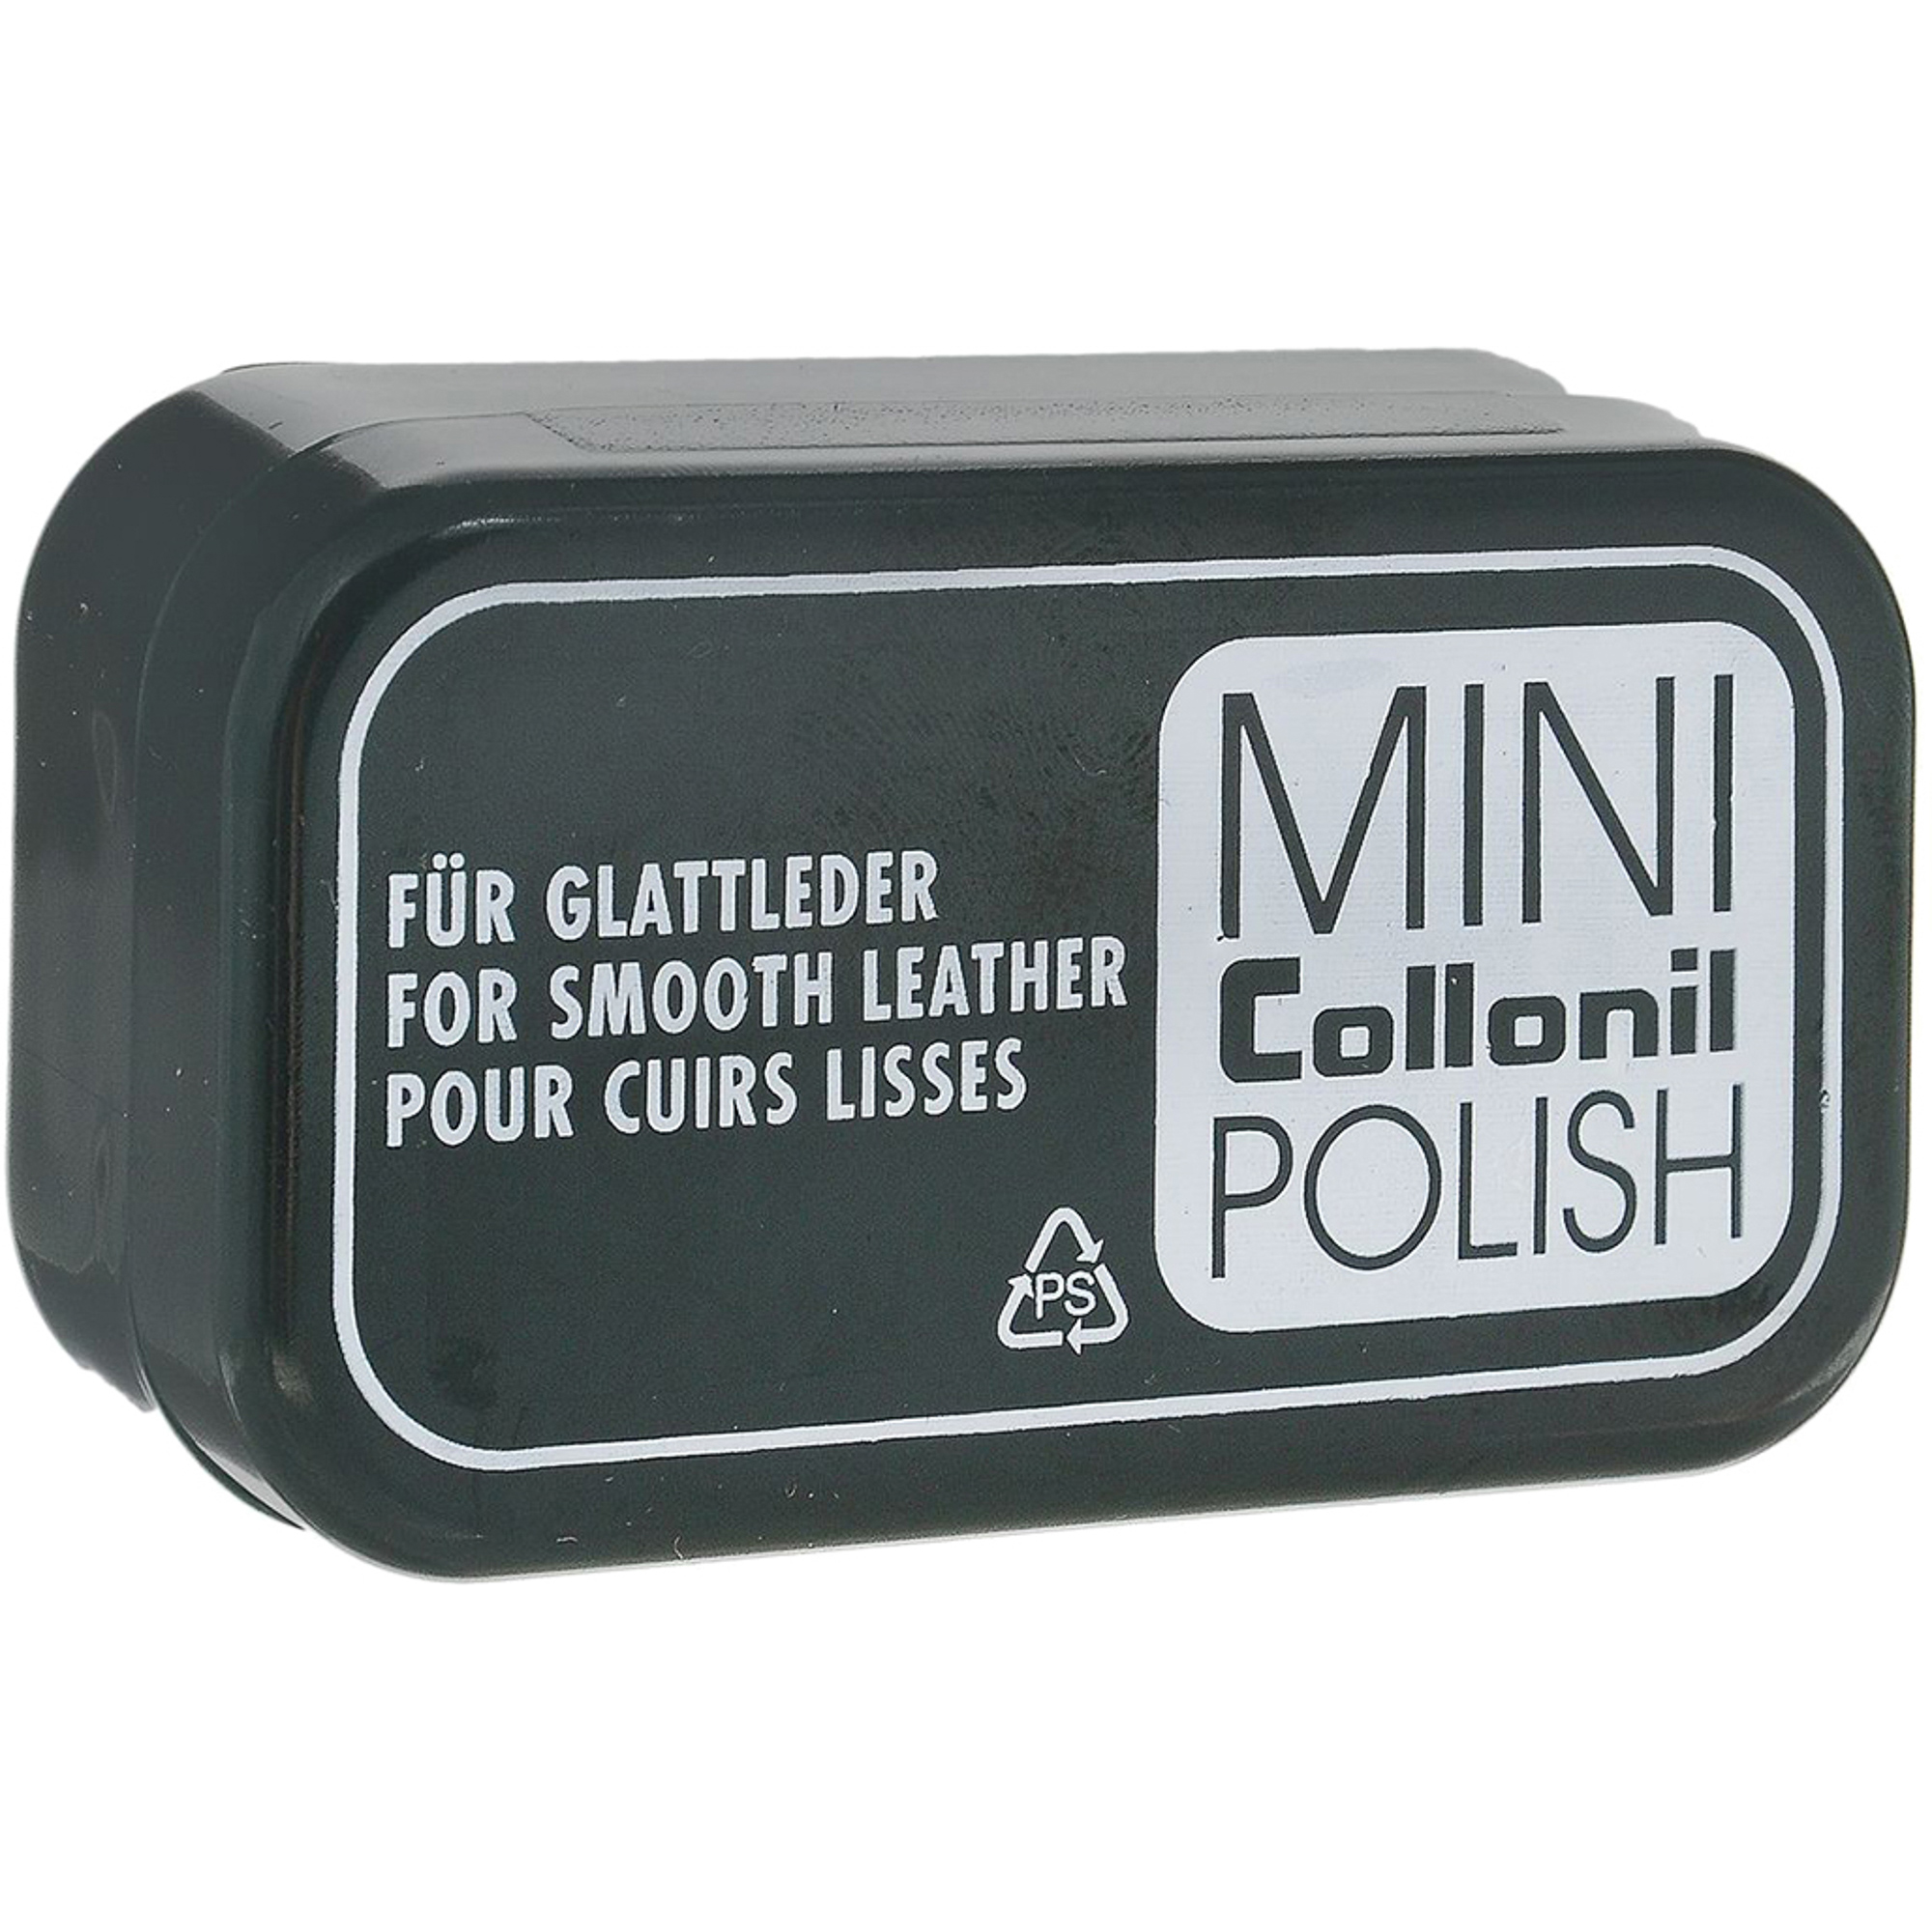 Губка для полировки Collonil Mini Polish губка для мойки и полировки главдор